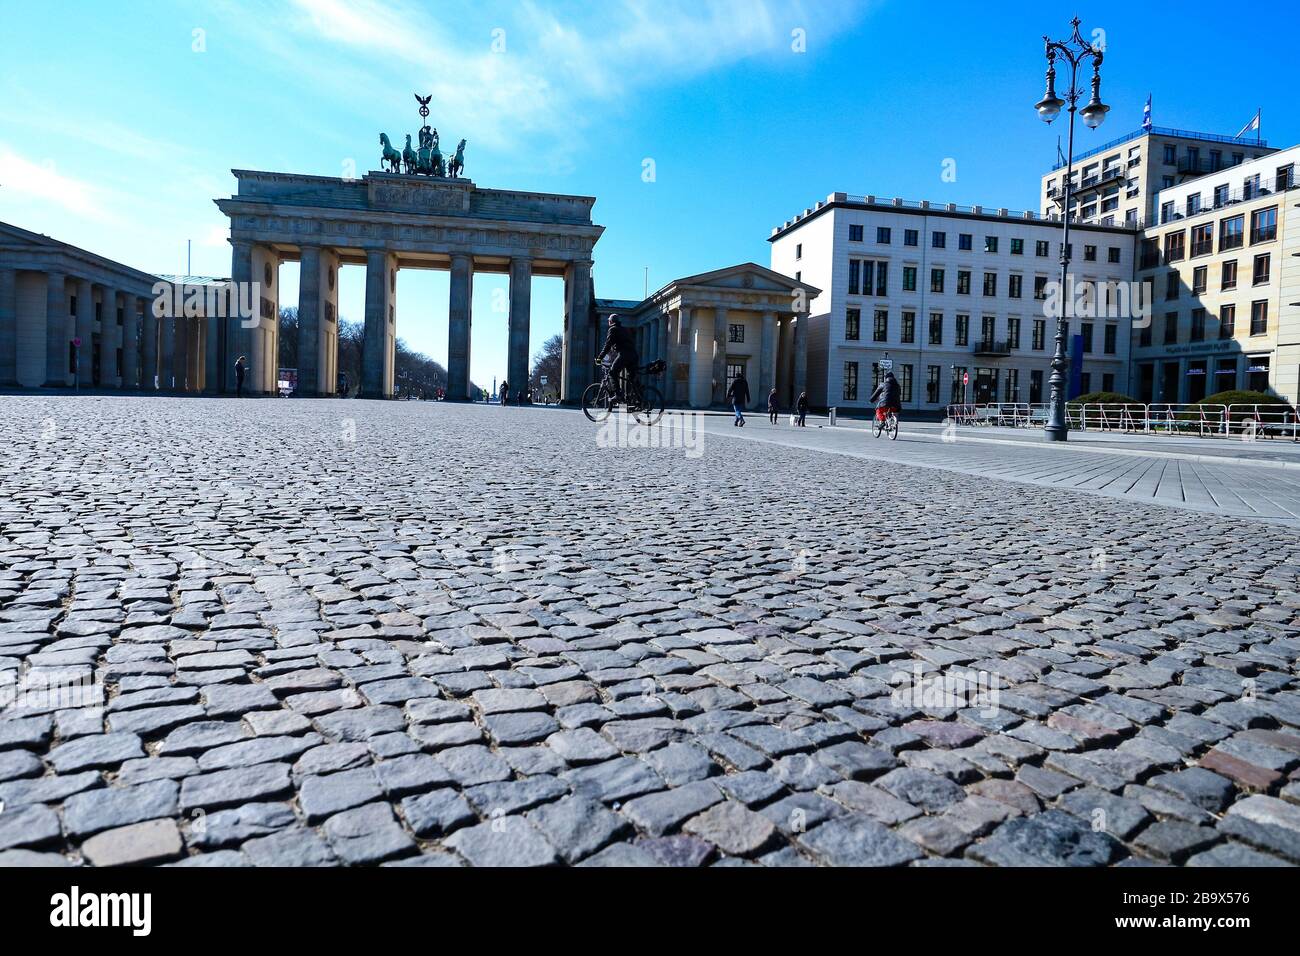 Der Platz vor dem Brandenburger Tor in Berlin, in der Regel ein wichtiger Wahrzeichen und touristischer Hotspot, ist während der Sperrung von Coronavirus in Deutschland menschenleer. Stockfoto